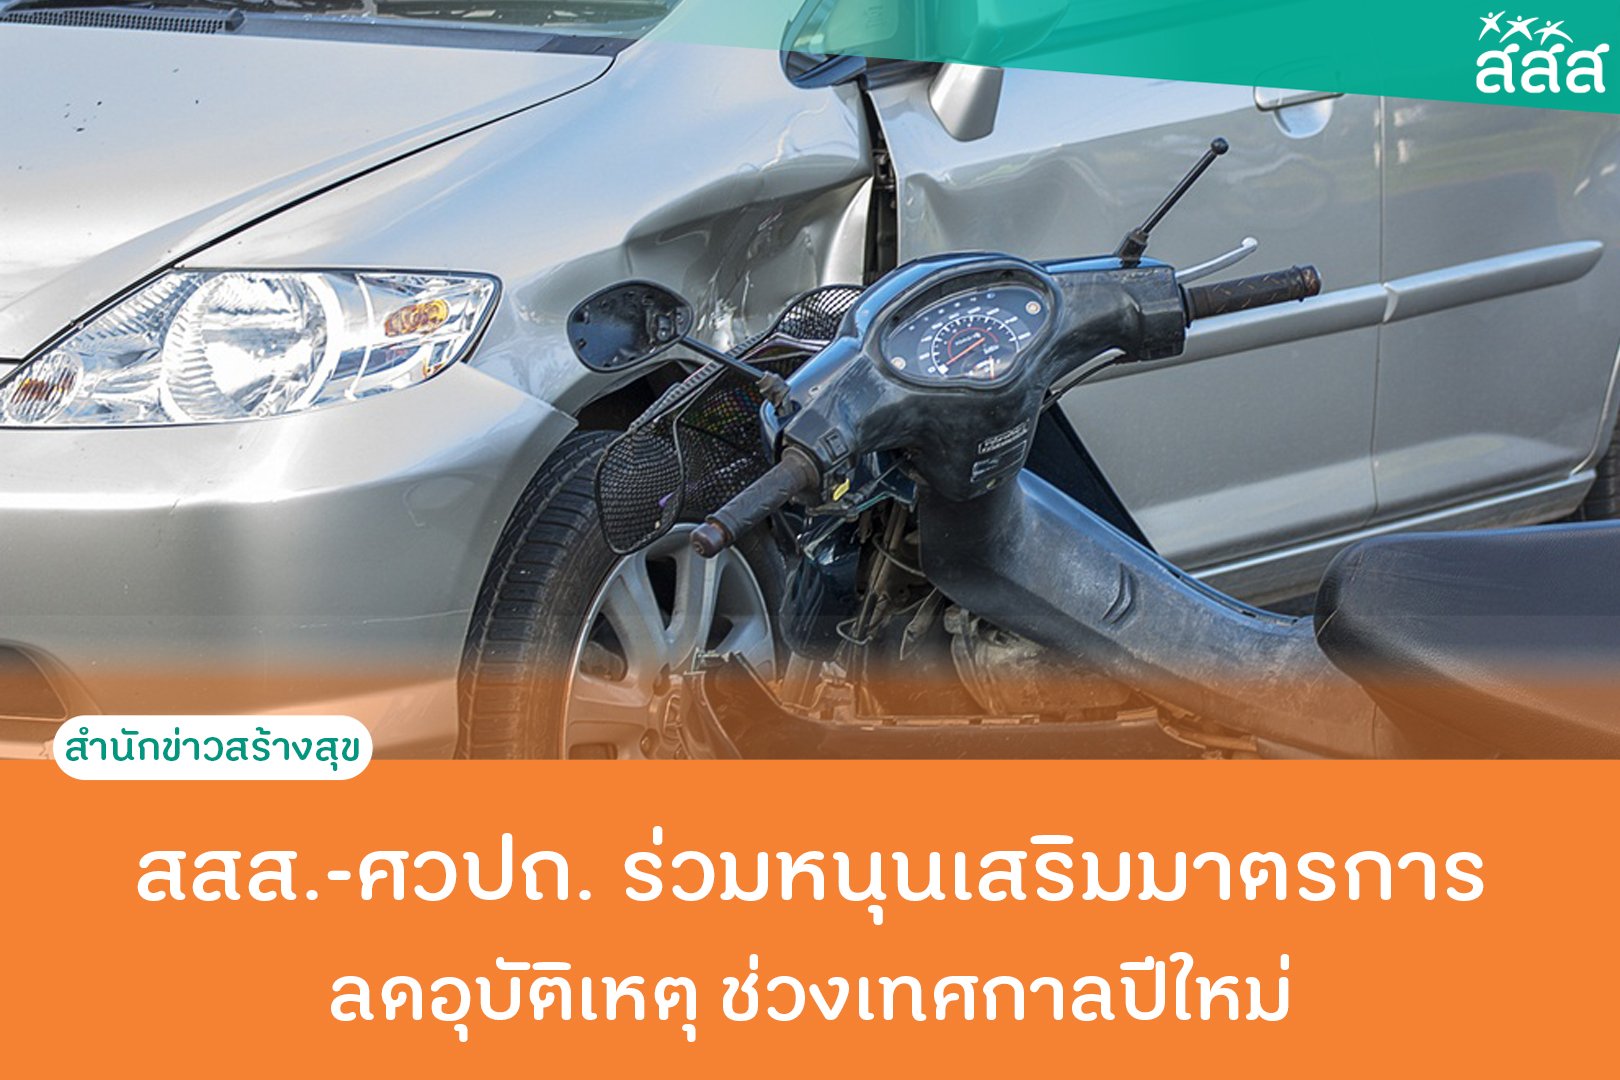 สสส.-ศวปถ. ร่วมหนุนเสริมมาตรการลดอุบัติเหตุช่วงเทศกาลปีใหม่ thaihealth